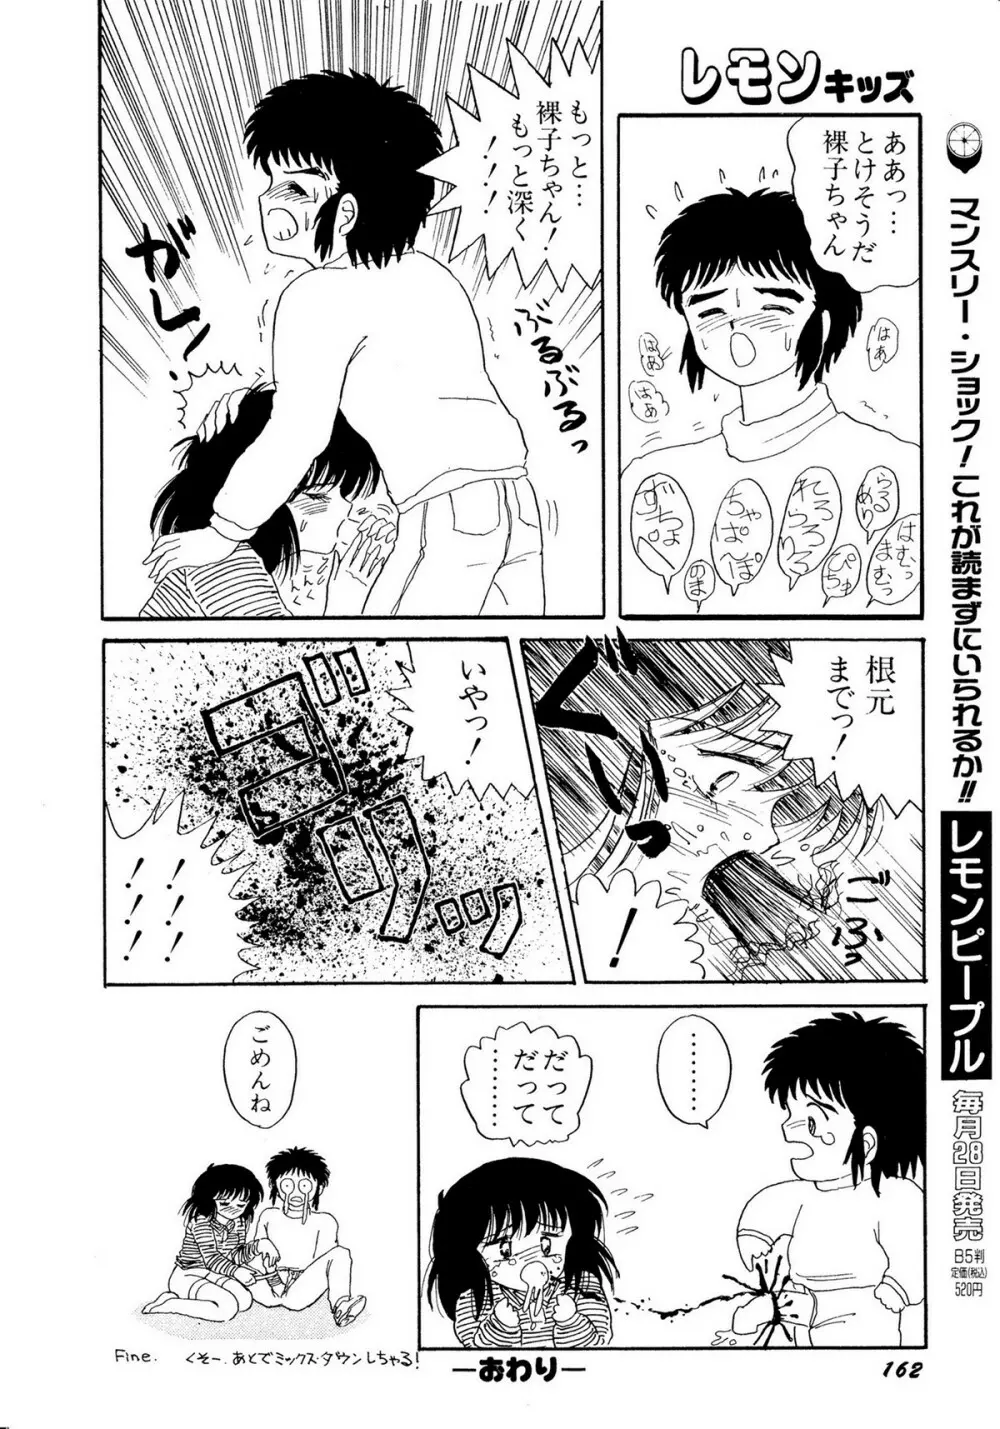 レモンキッズ No.10 162ページ